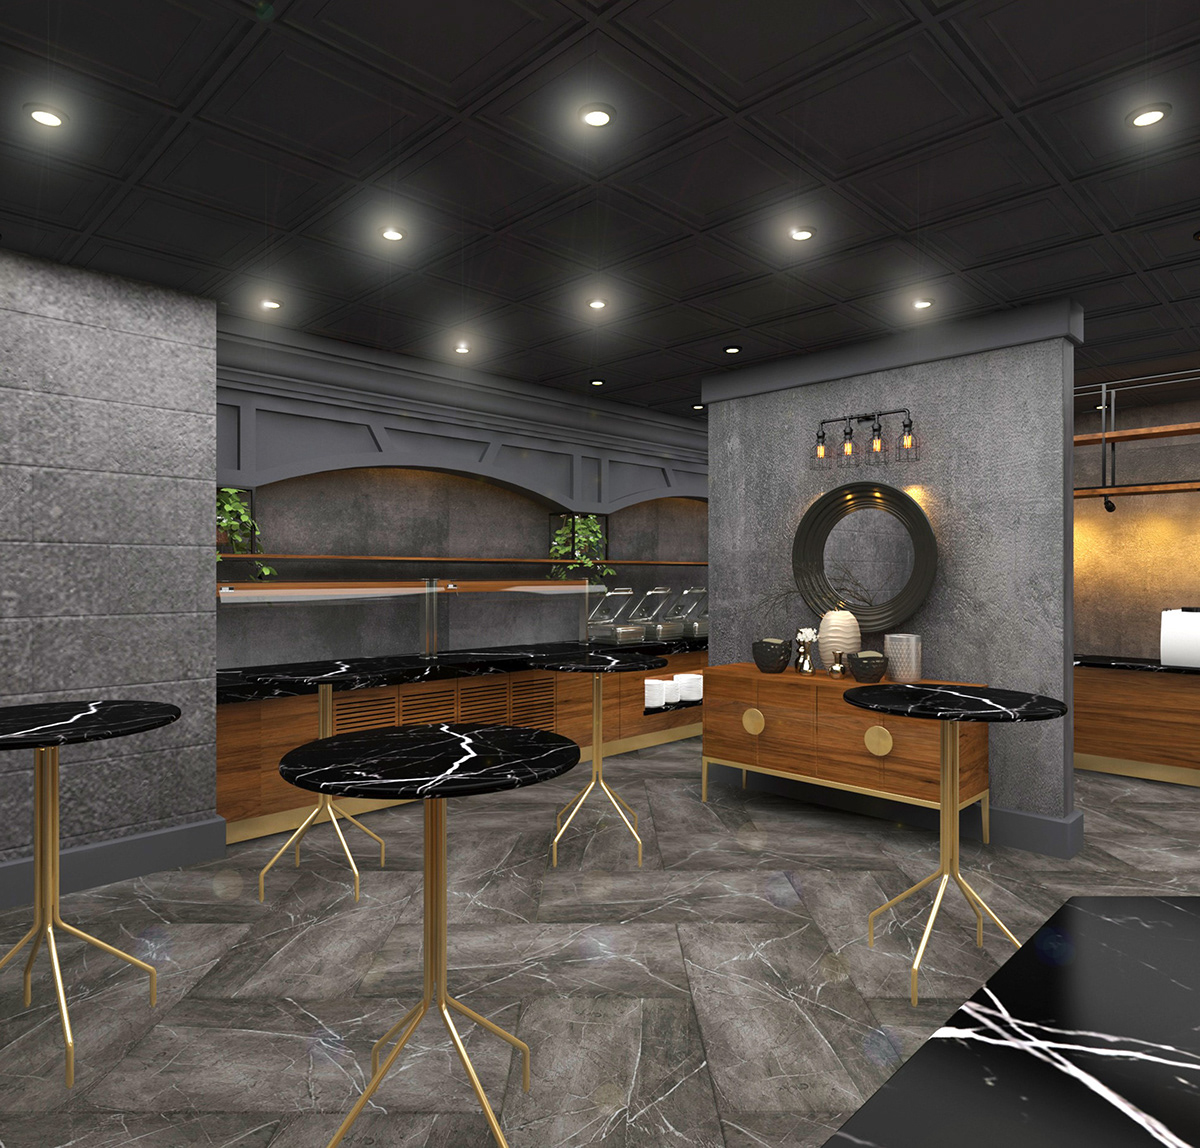 tasarim İÇ TASARIM mimari ic dizayn Otel projesi Konut Projesi mobilya İnşaat Projesi restoran tasarımı hospitalitydesign